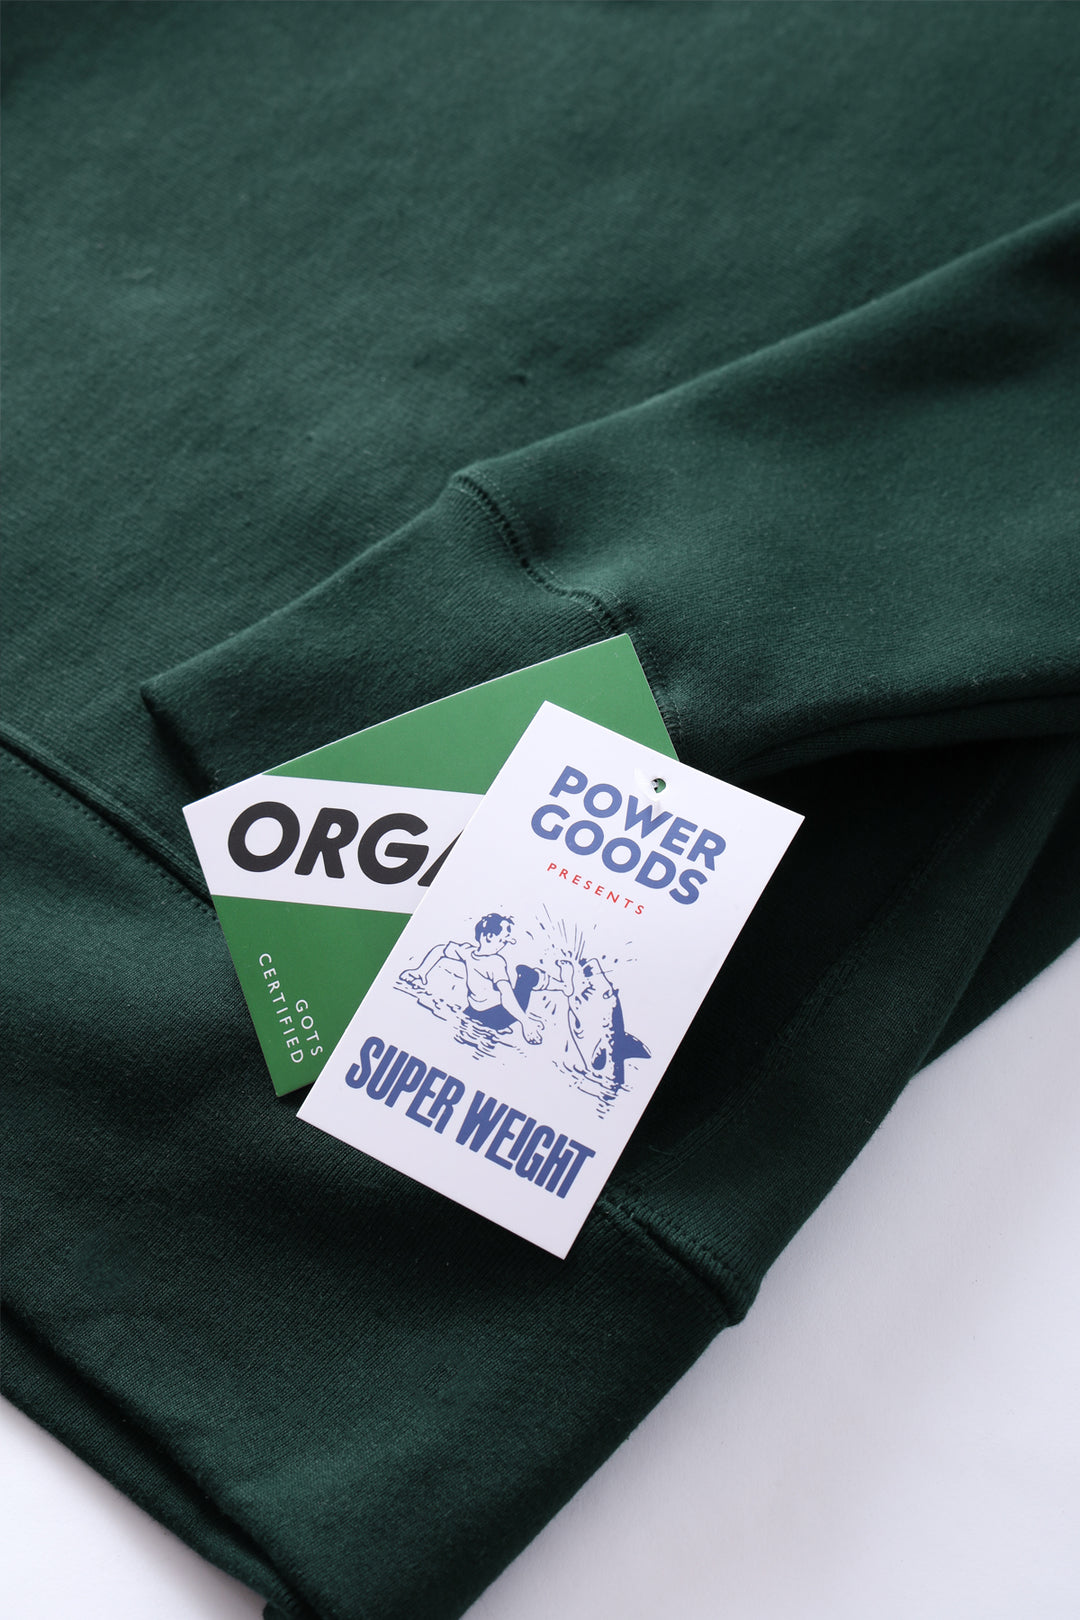 Power Goods - Super Weight Crewneck - Forest Green